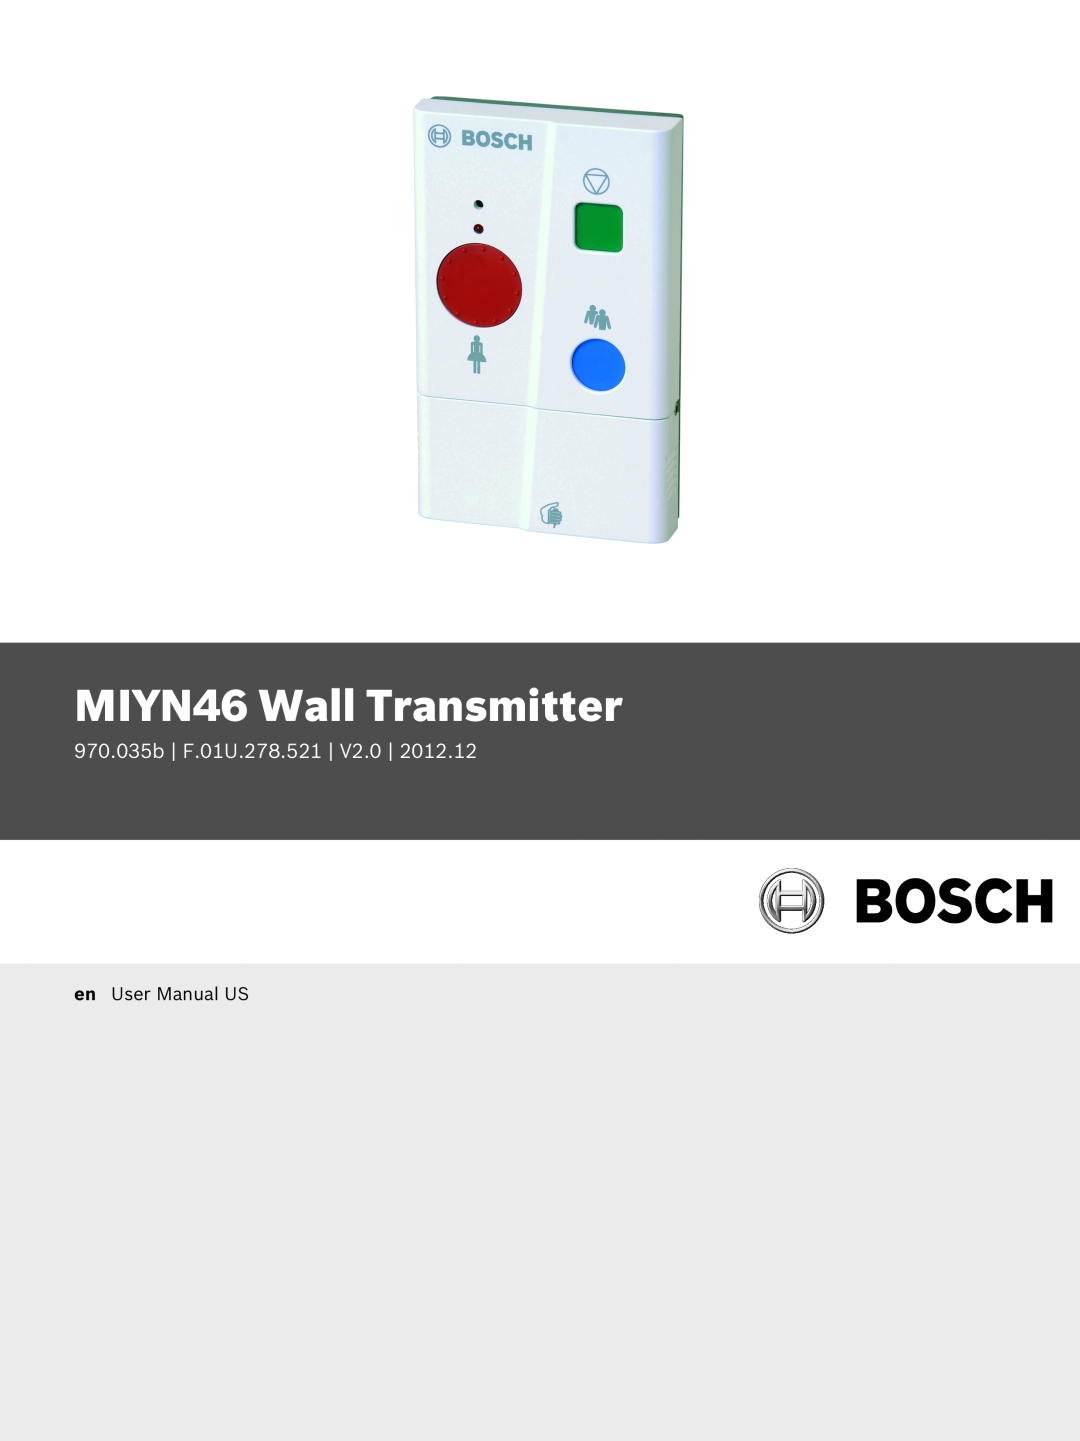 Bosch Appliances user manual MIYN46 Wall Transmitter, 970.035b F.01U.278.521 